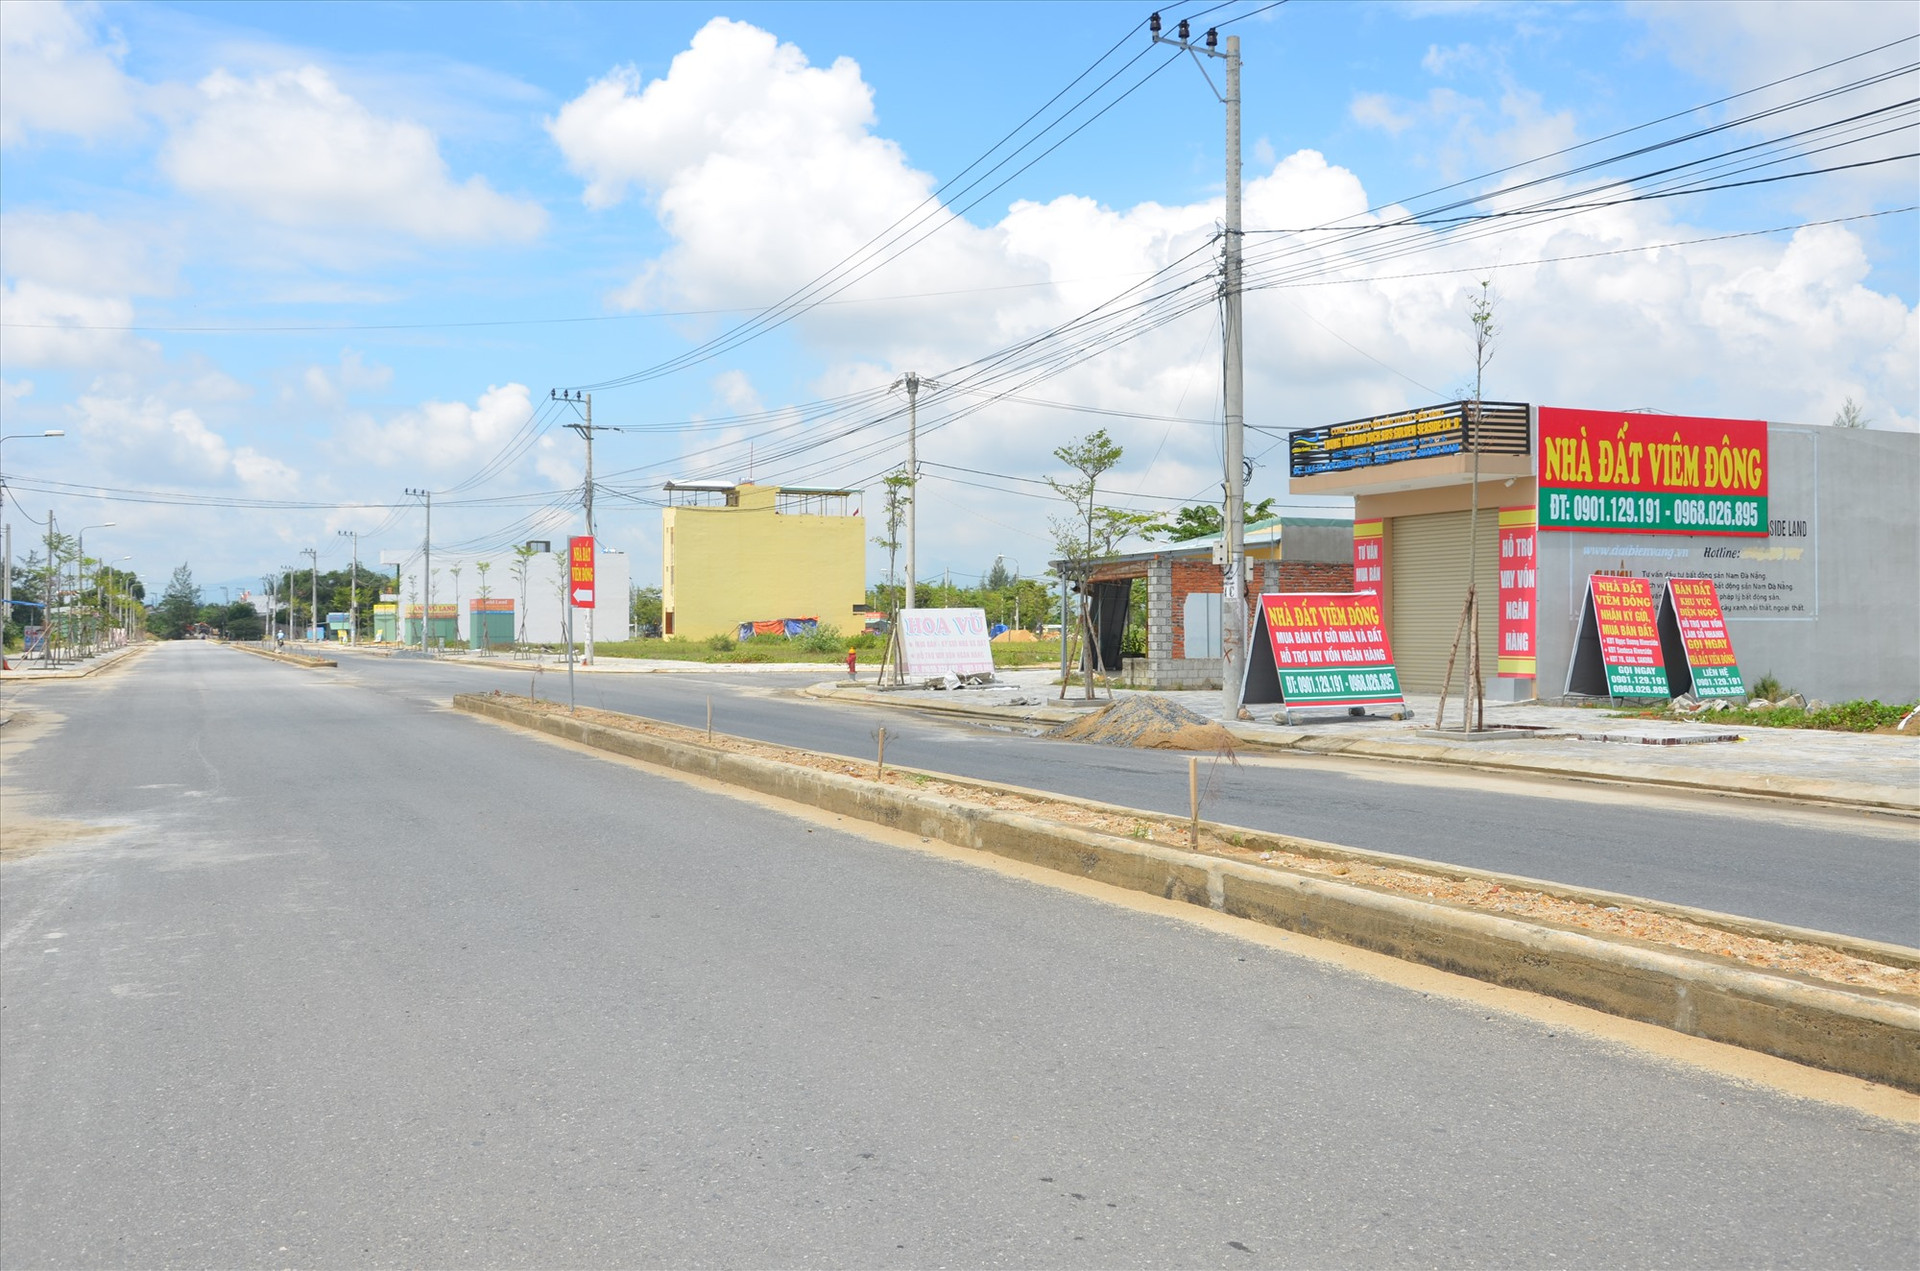 Những năm gần đây tốc độ phát triển các dự án đô thị ở Đô thị mới Điện Nam - Điện Ngọc diễn ra nhộn nhịp.